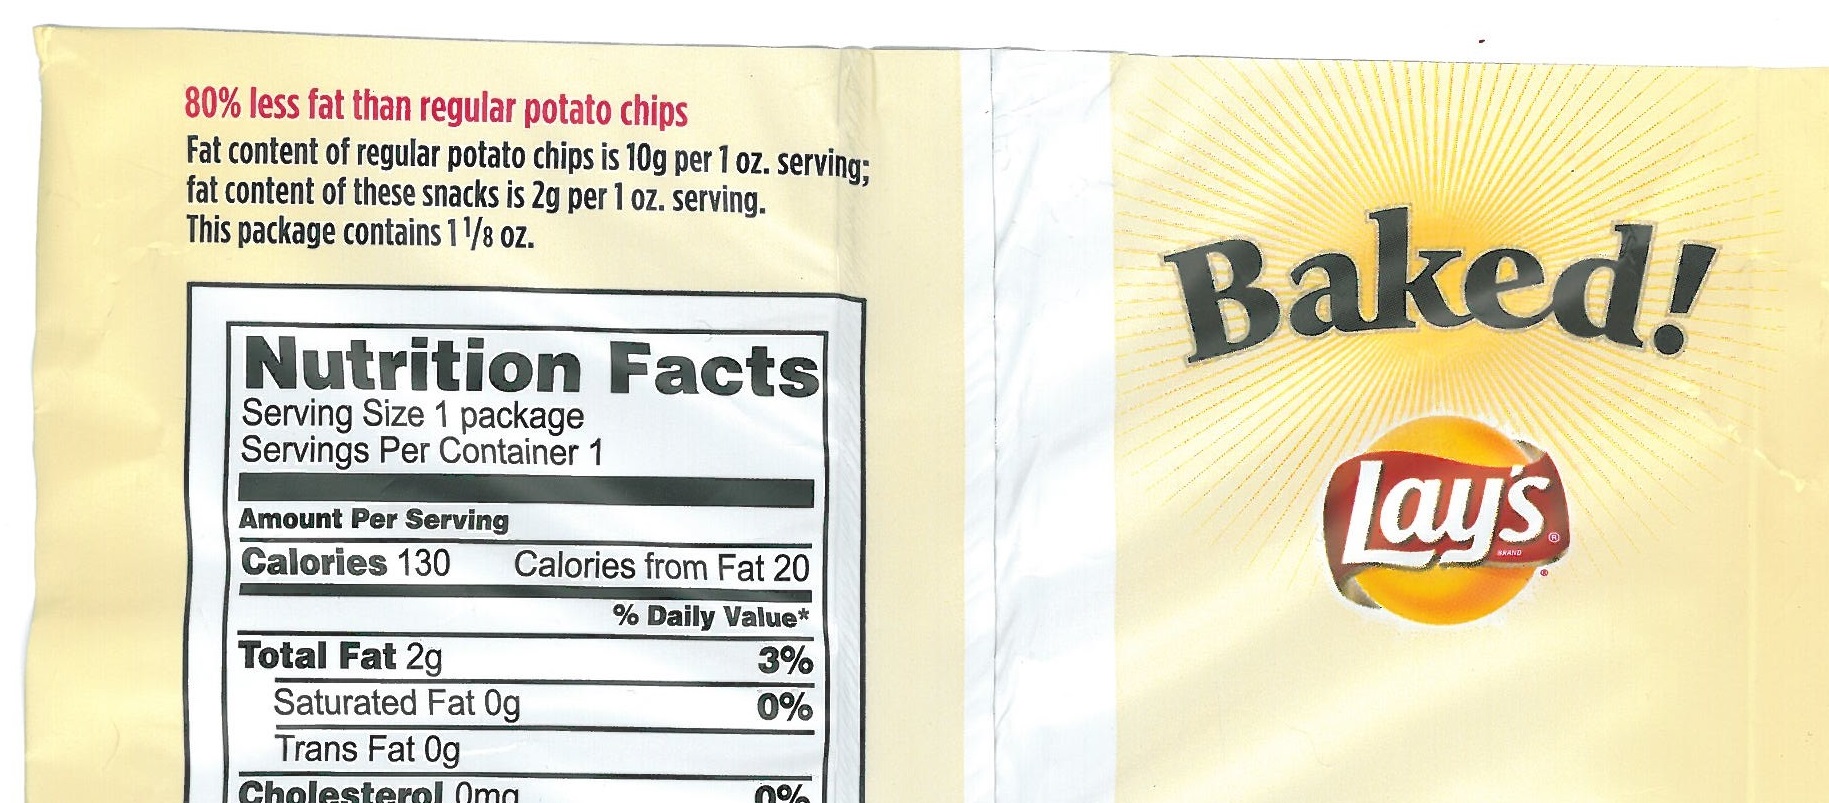 Angabe zum Fettgehalt von Kartoffelchips - Wieviel Fett enthalten die Chips denn nun?